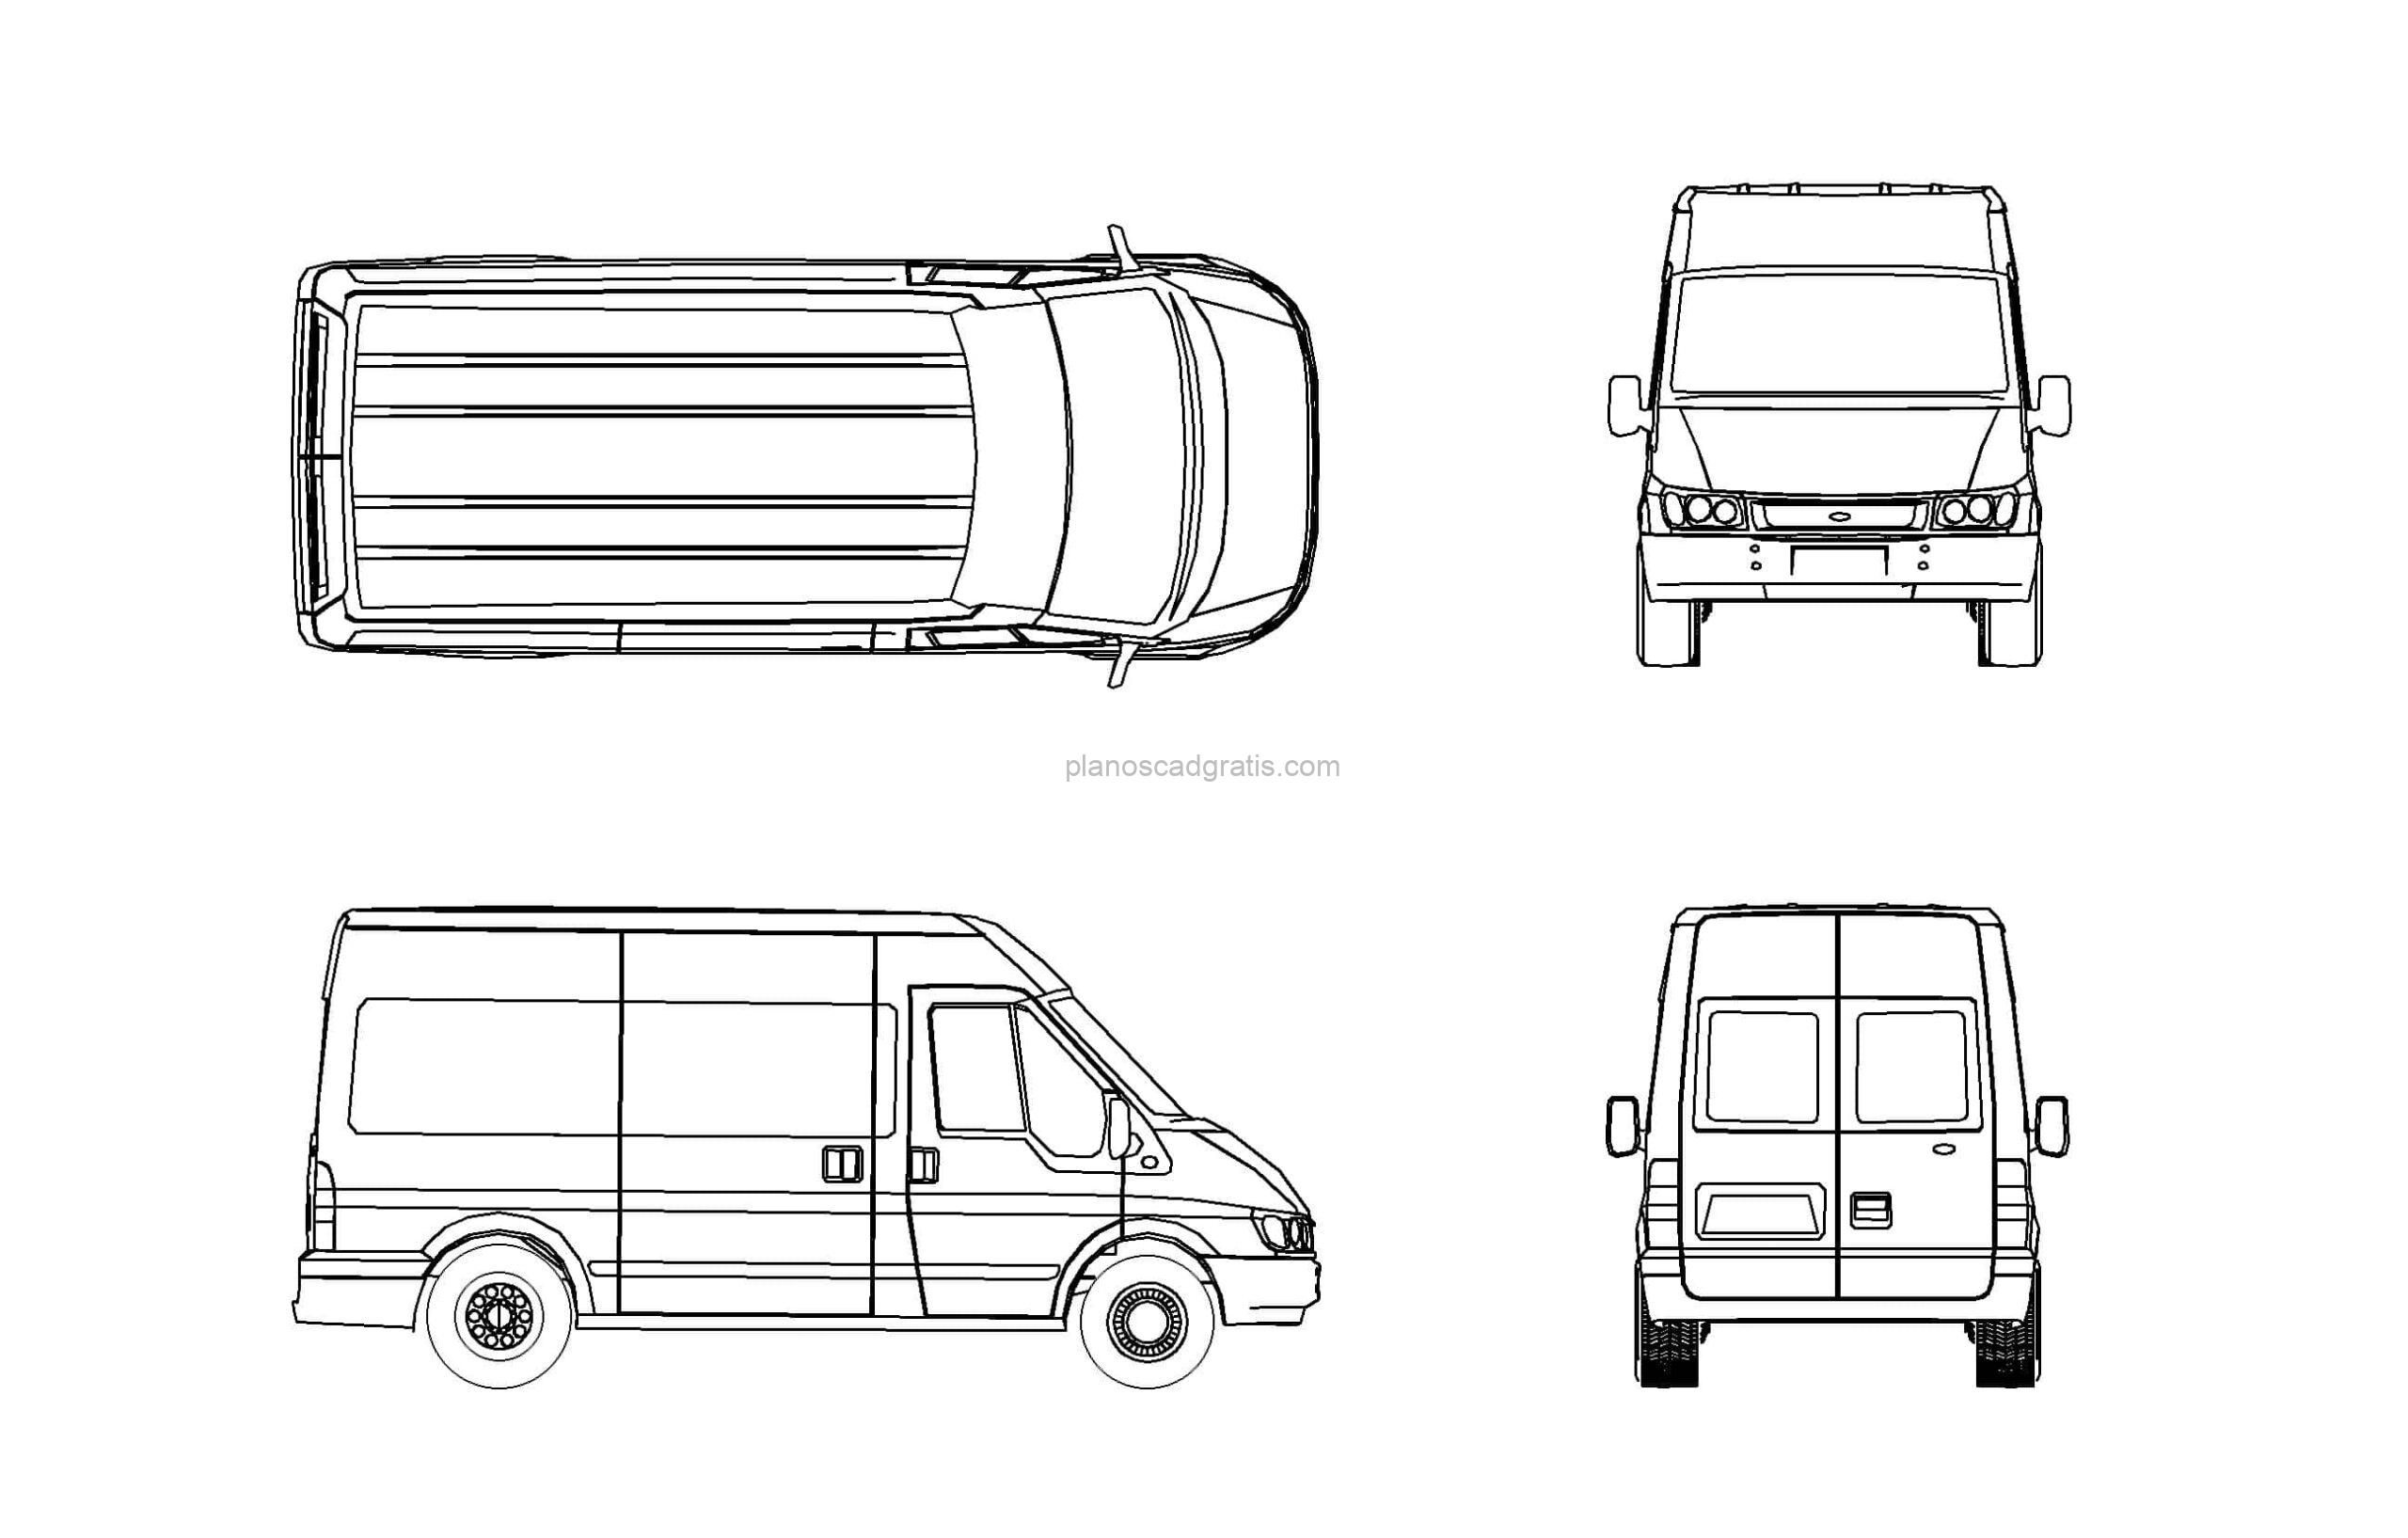 dibujo 2d de autocad de una furgoneta con todas las vistas en 2d, vistas en planta, elevaciones frontal y laterla, bloque dwg para descarga gratis